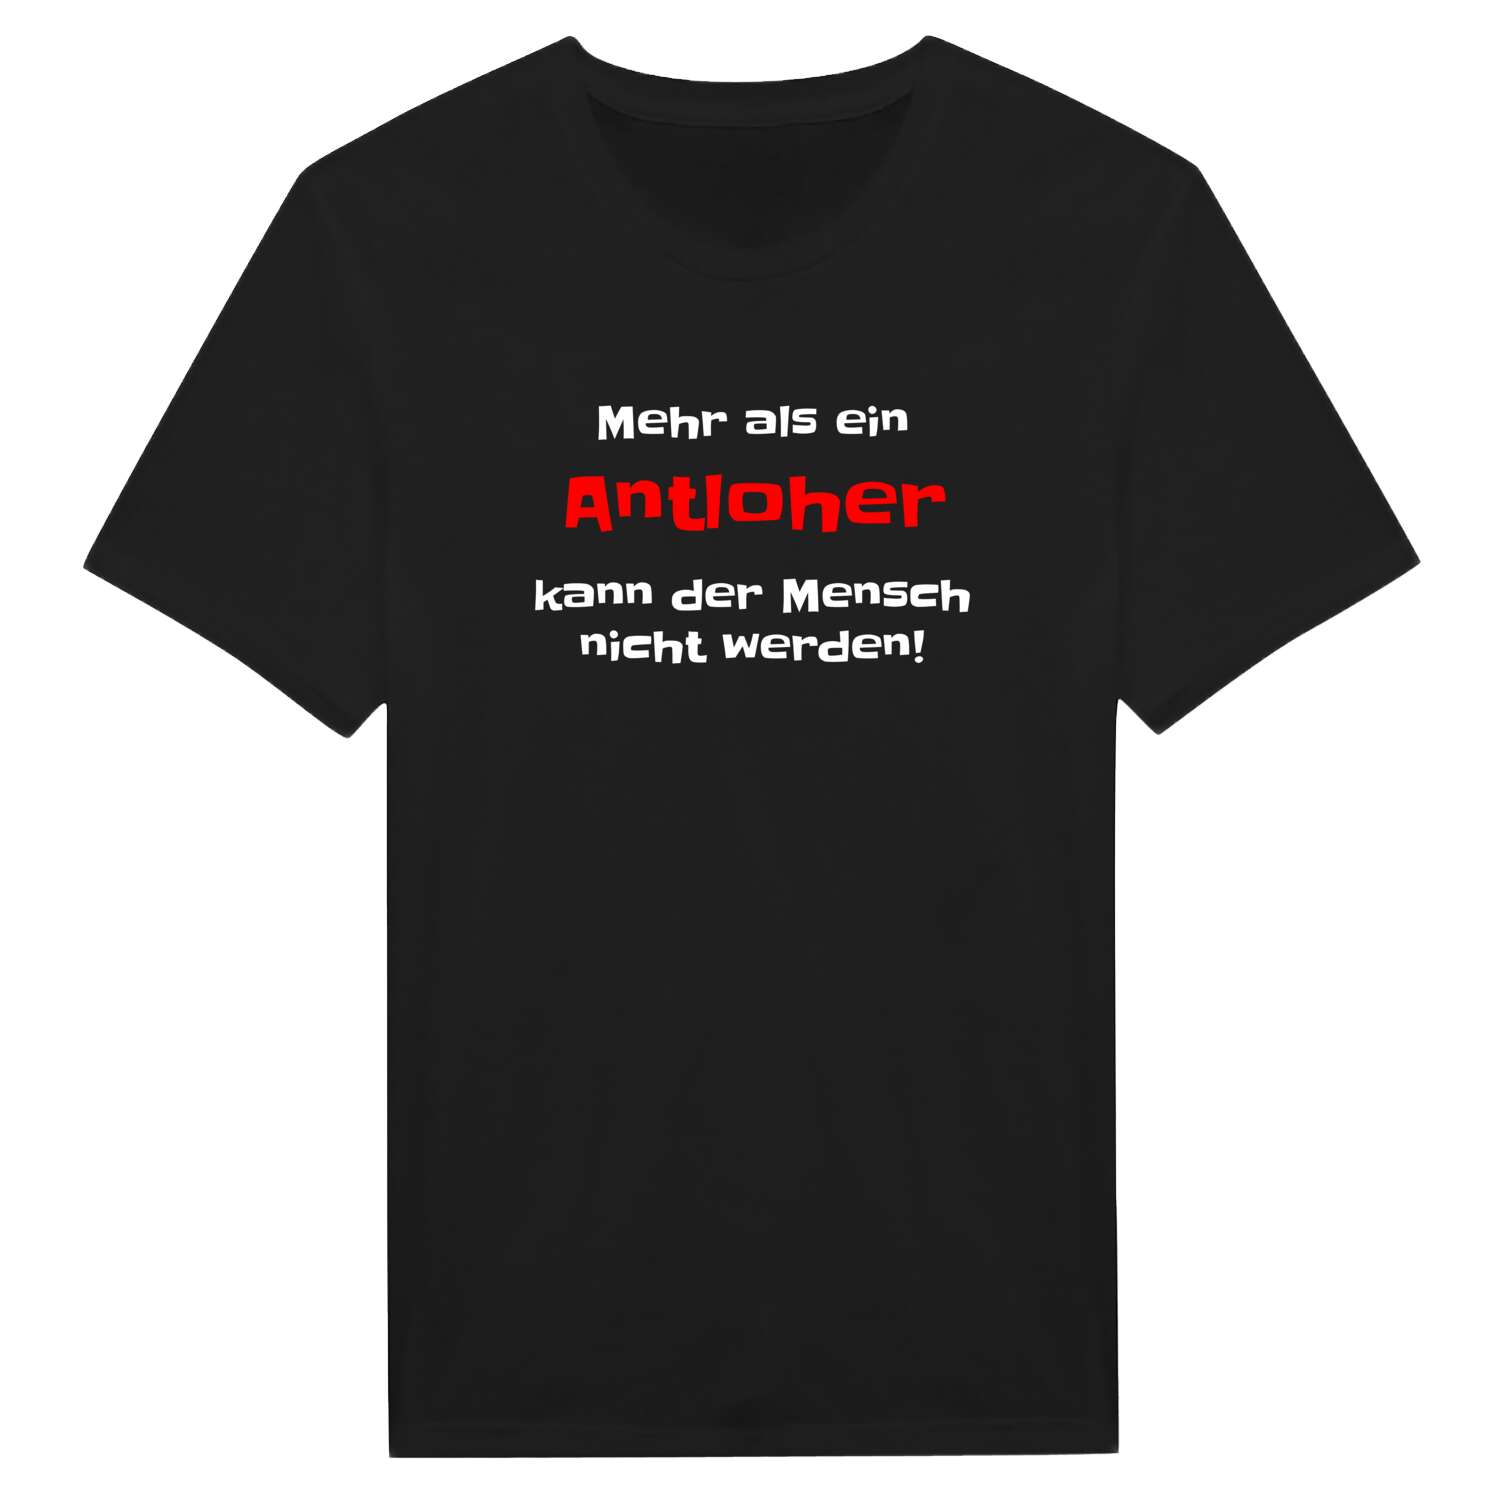 Antloh T-Shirt »Mehr als ein«